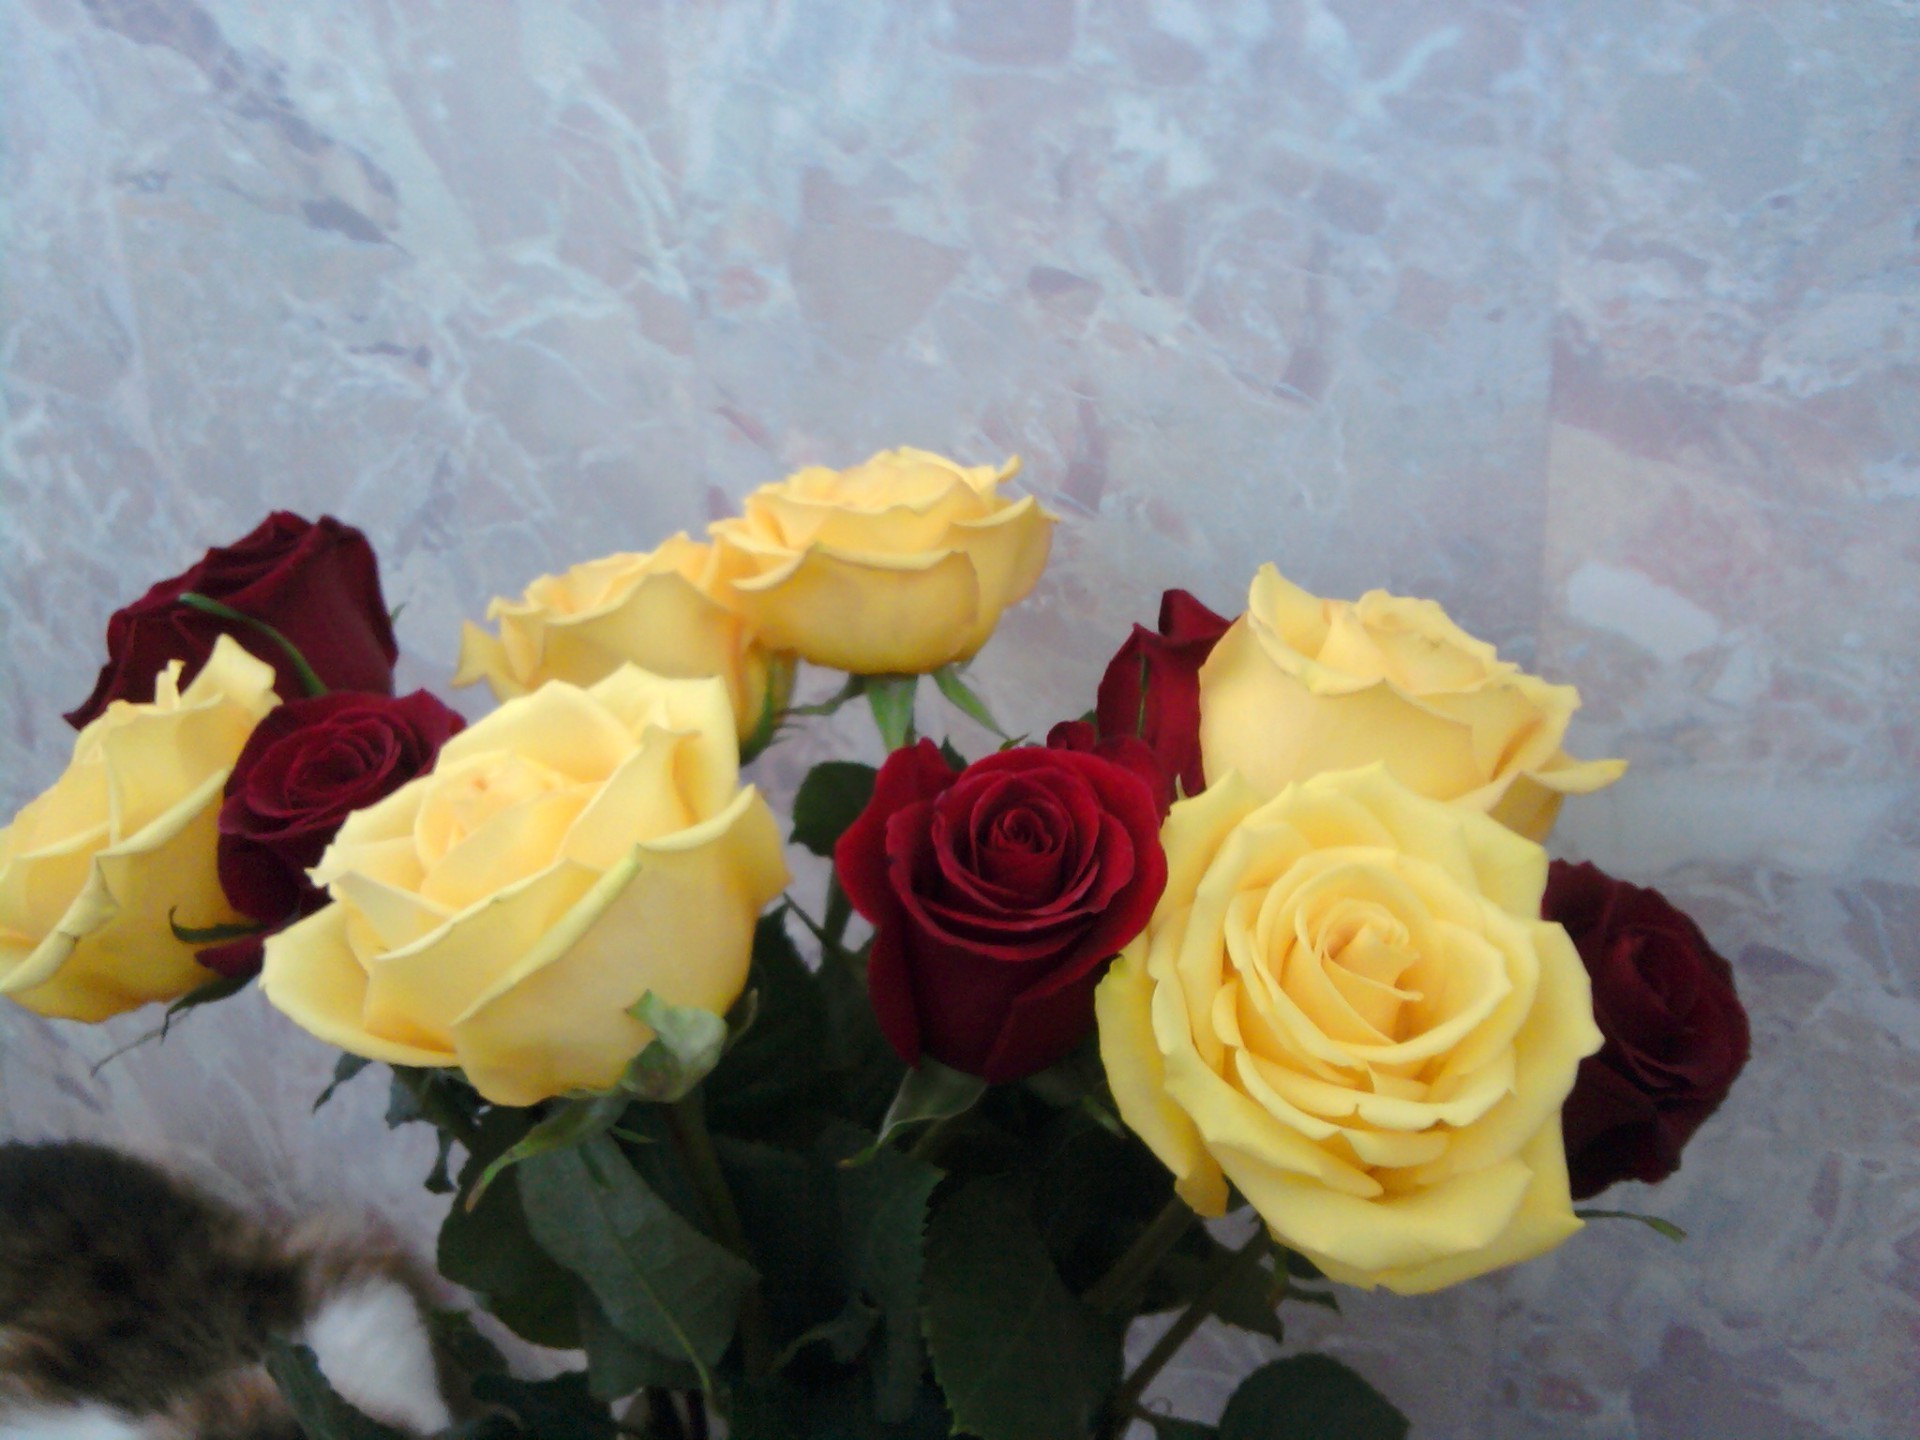 цветы роза любовь свадьба цветок романтика юбилей букет подарок лепесток романтический день рождения праздник цветочные невеста блюминг лист украшения